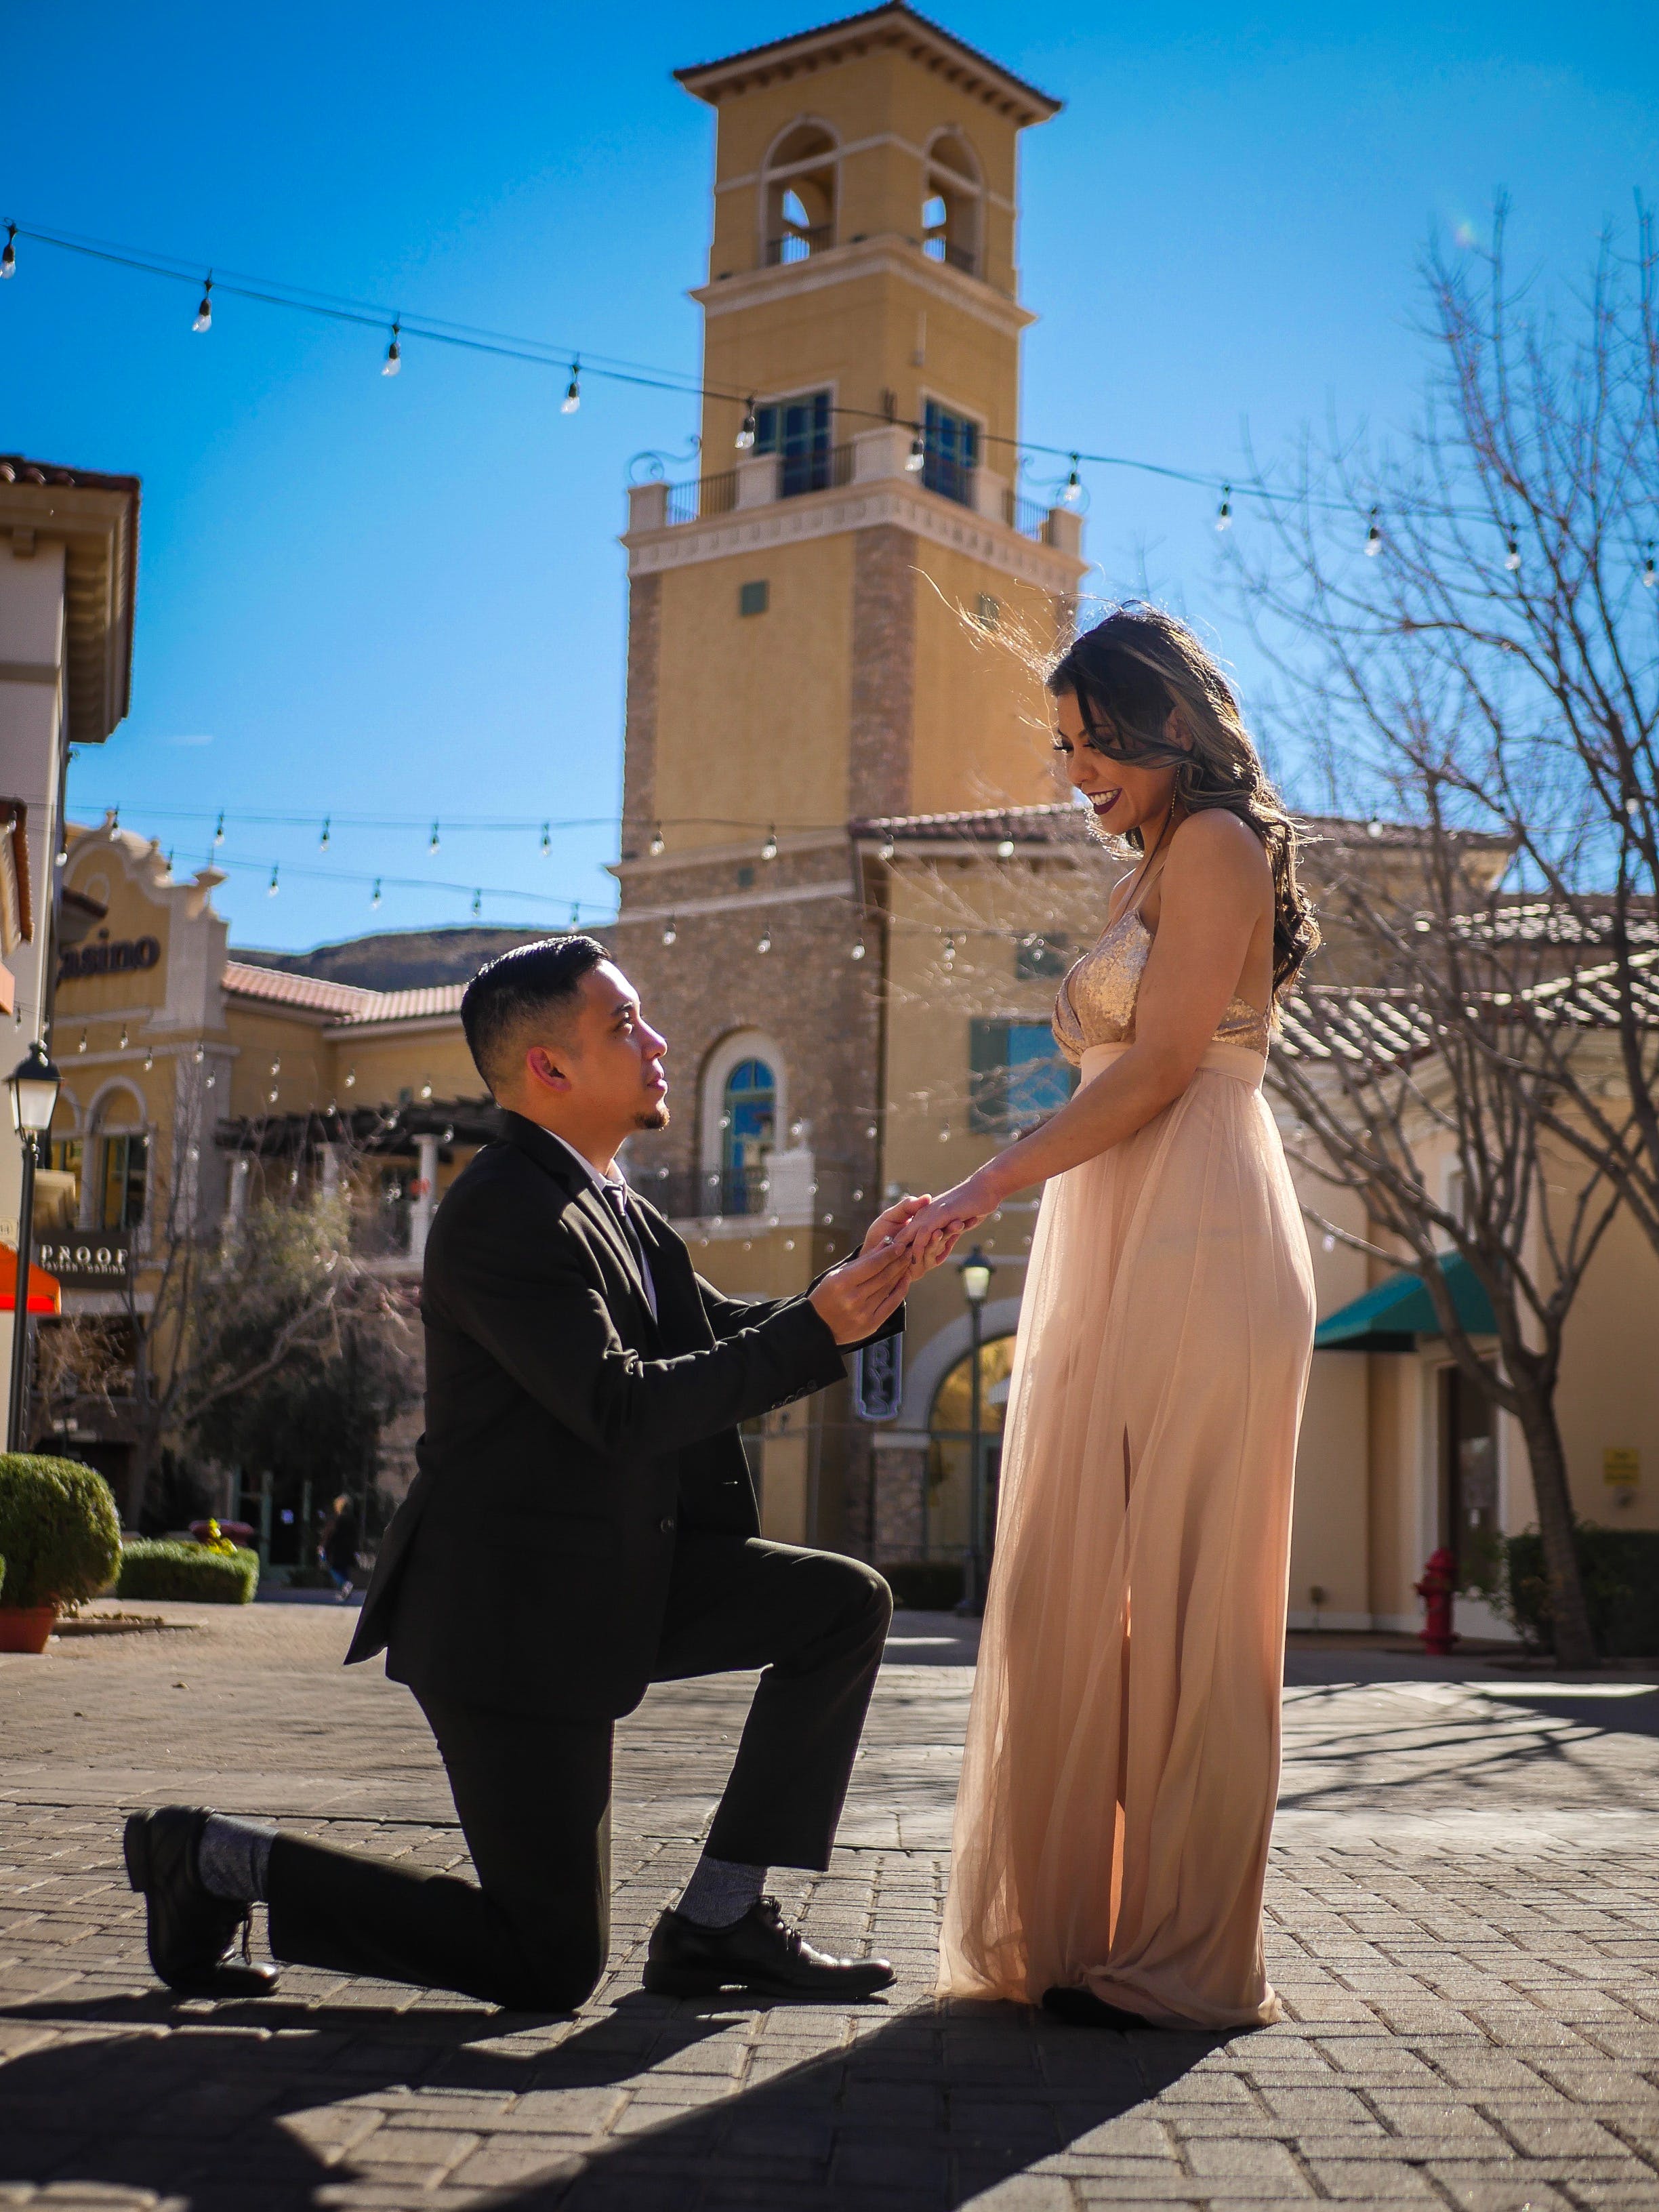 Ein Mann macht seiner Freundin einen Heiratsantrag auf den Knien | Quelle: Pexels